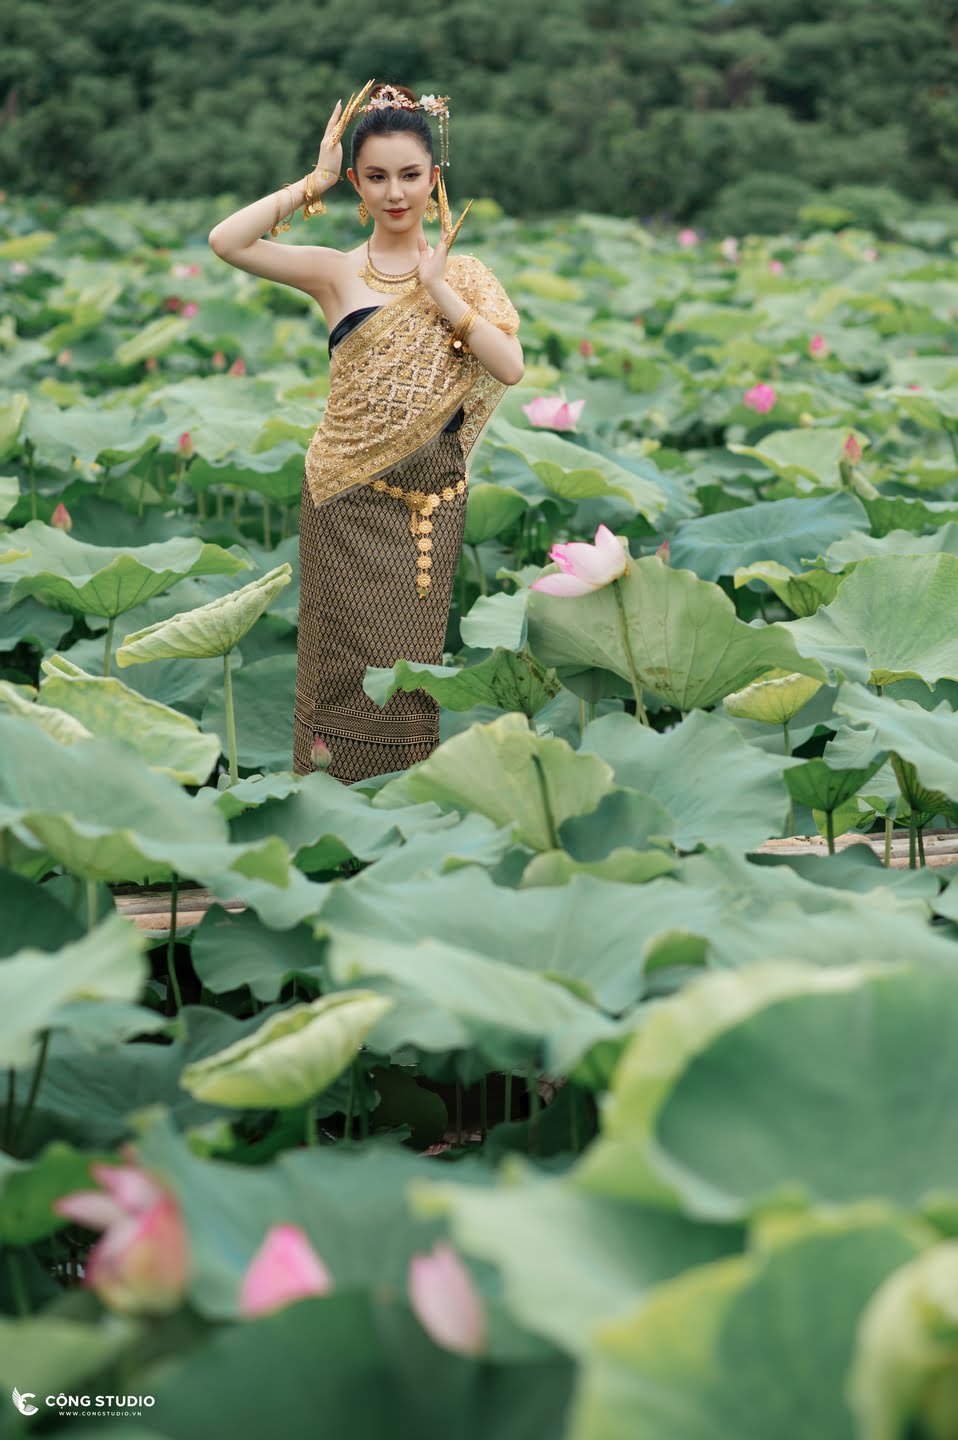 Chụp ảnh sen hồ tây concept thái lan đẹp, chuyên nghiệp, giá rẻ (24)